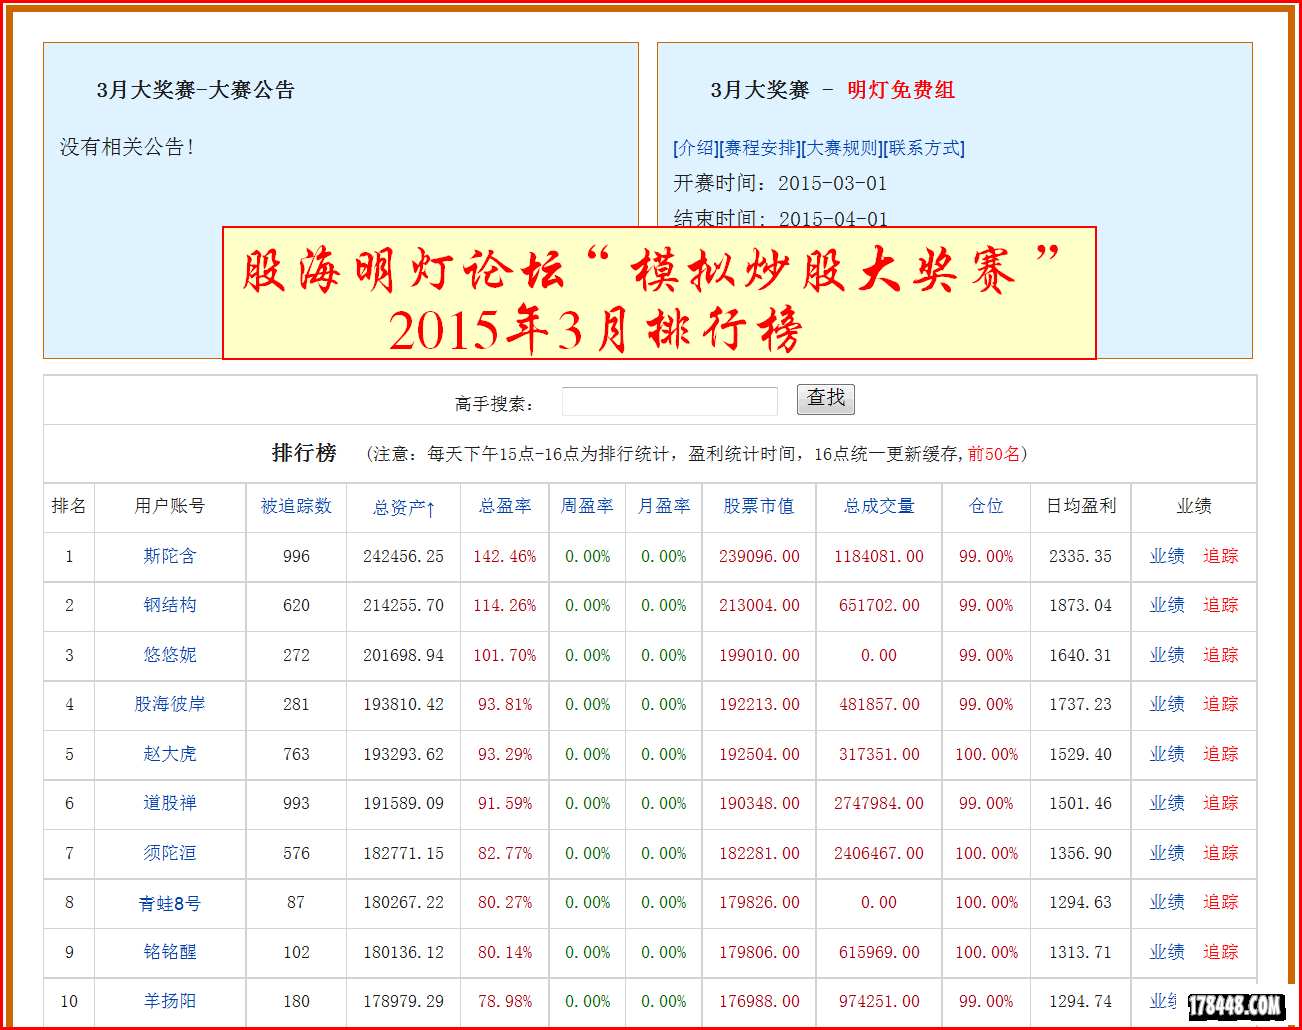 2015-03-31模拟炒股排行榜.png